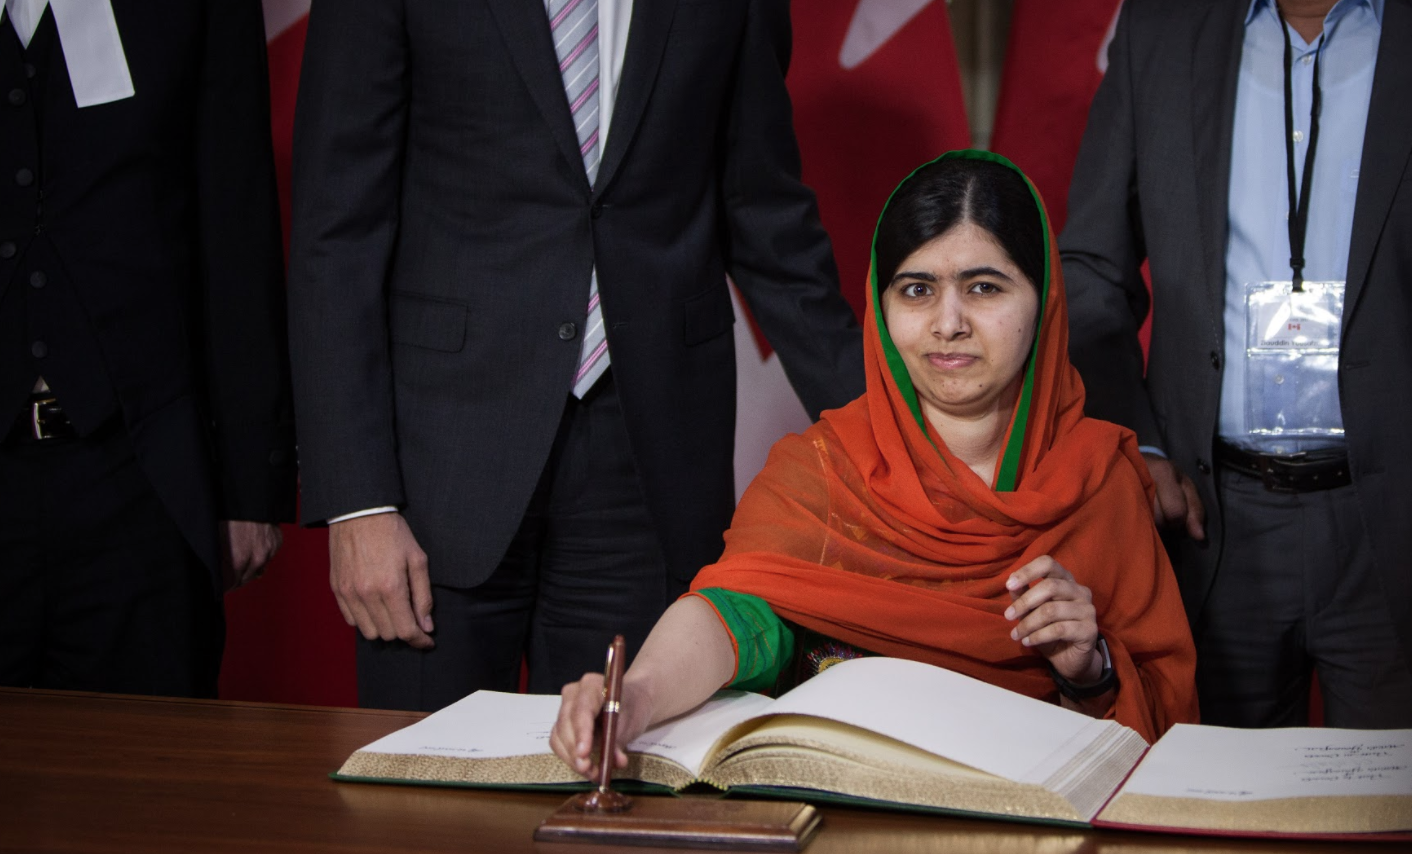 Malala Yousafzai, Parliament Hill, honorary Canadian, Pakistan